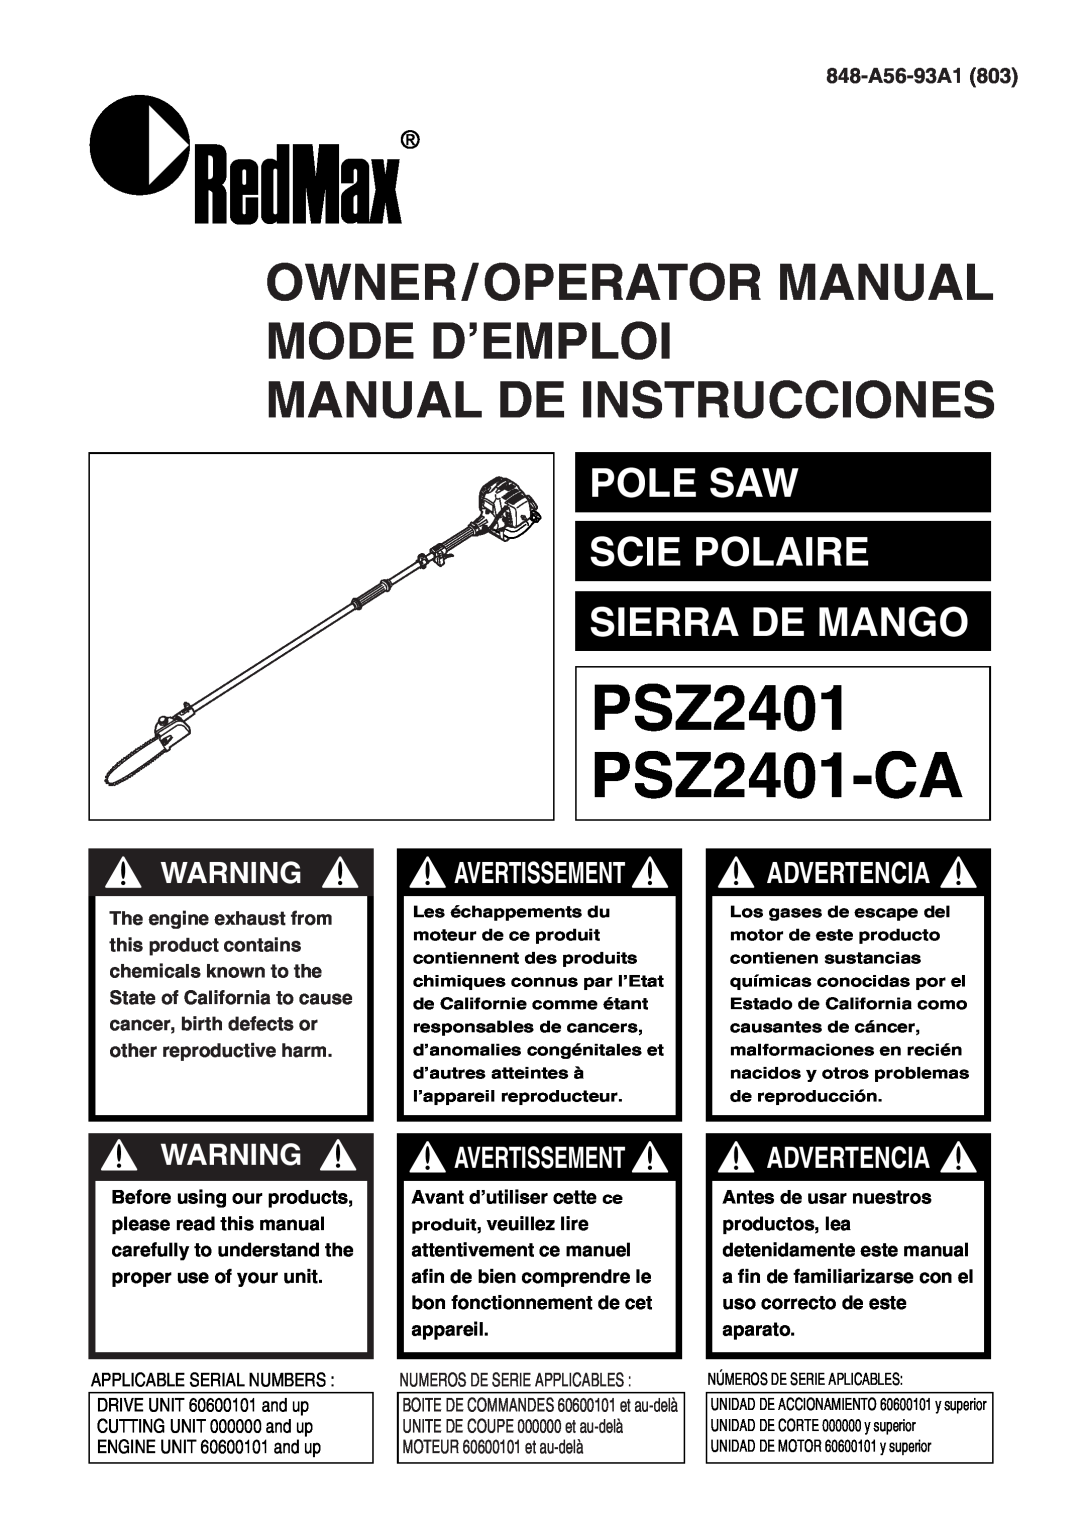 Zenoah manual 848-A56-93A1, PSZ2401 PSZ2401-CA, Owner/Operator Manual Mode D’Emploi Manual De Instrucciones 